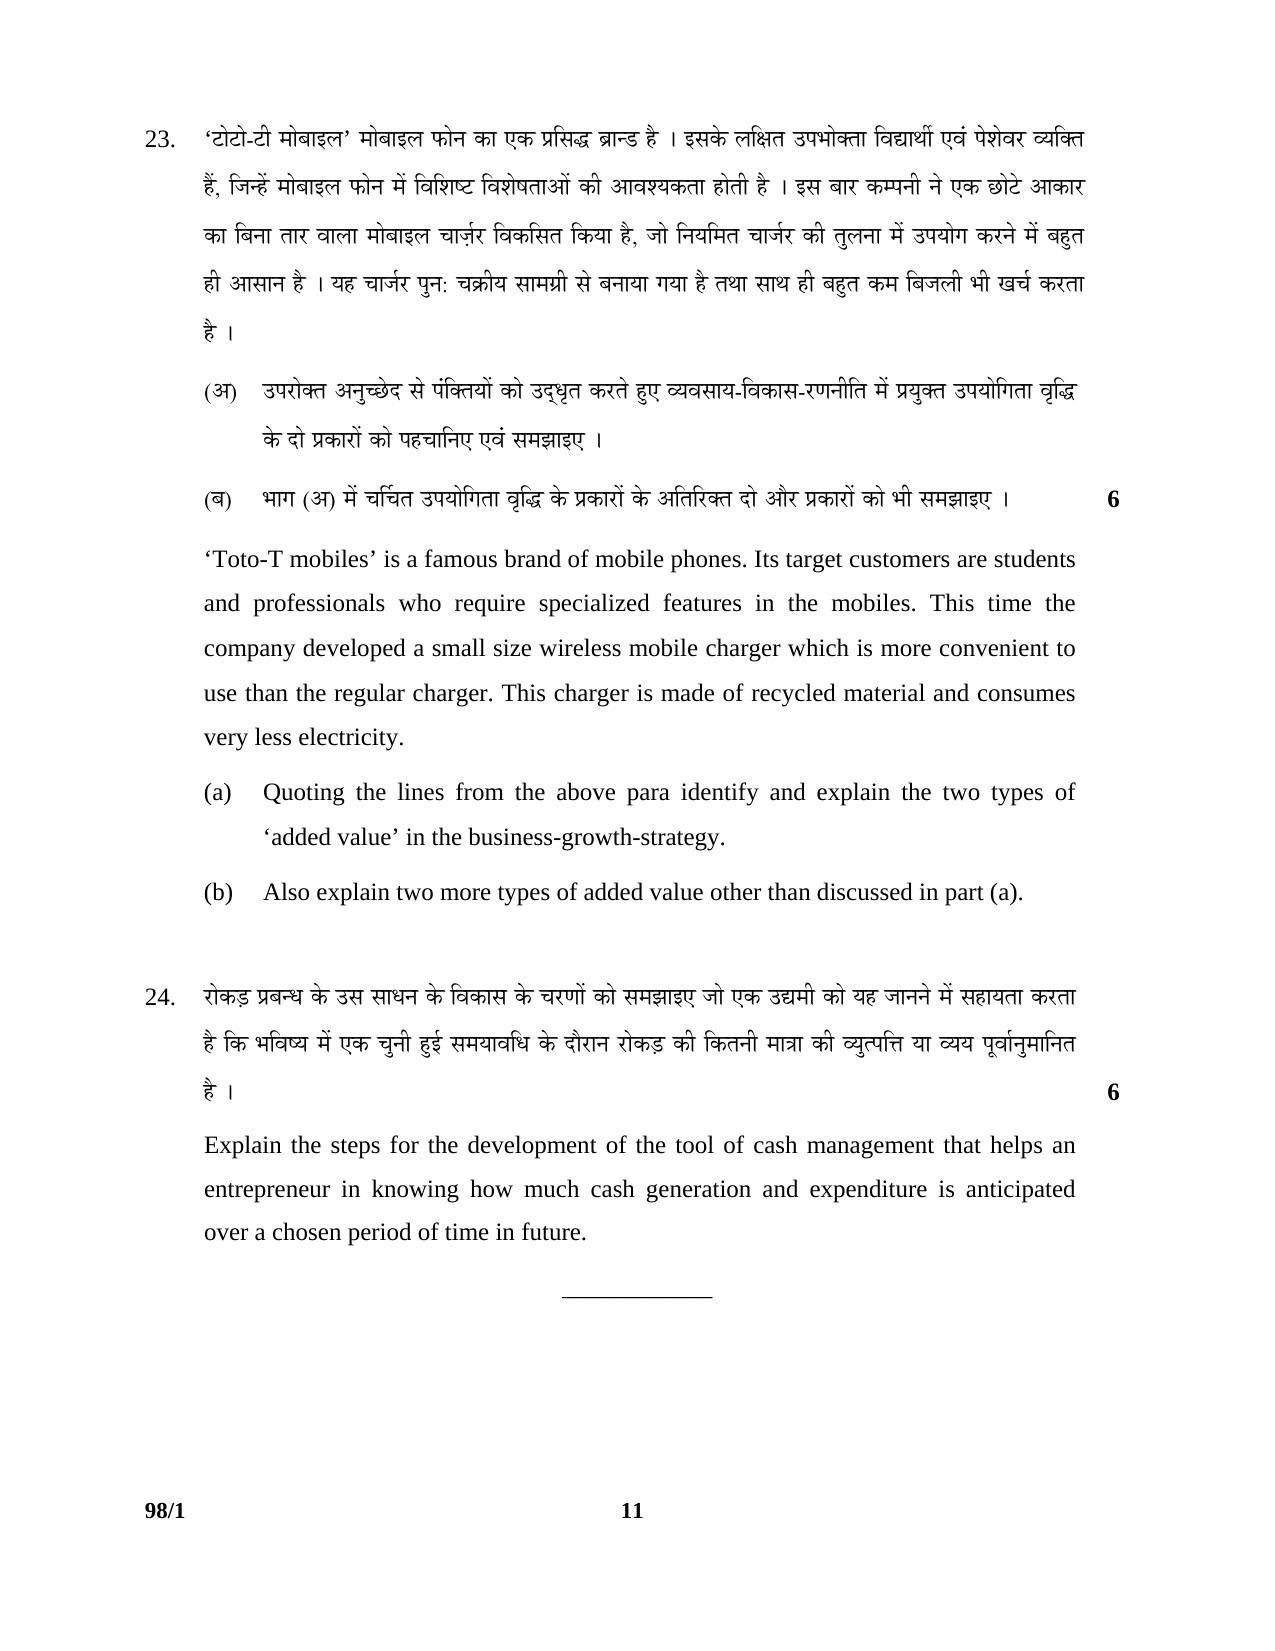 CBSE Class 12 98-1 ENTREPRENEURSHIP 2016 Question Paper - Page 11